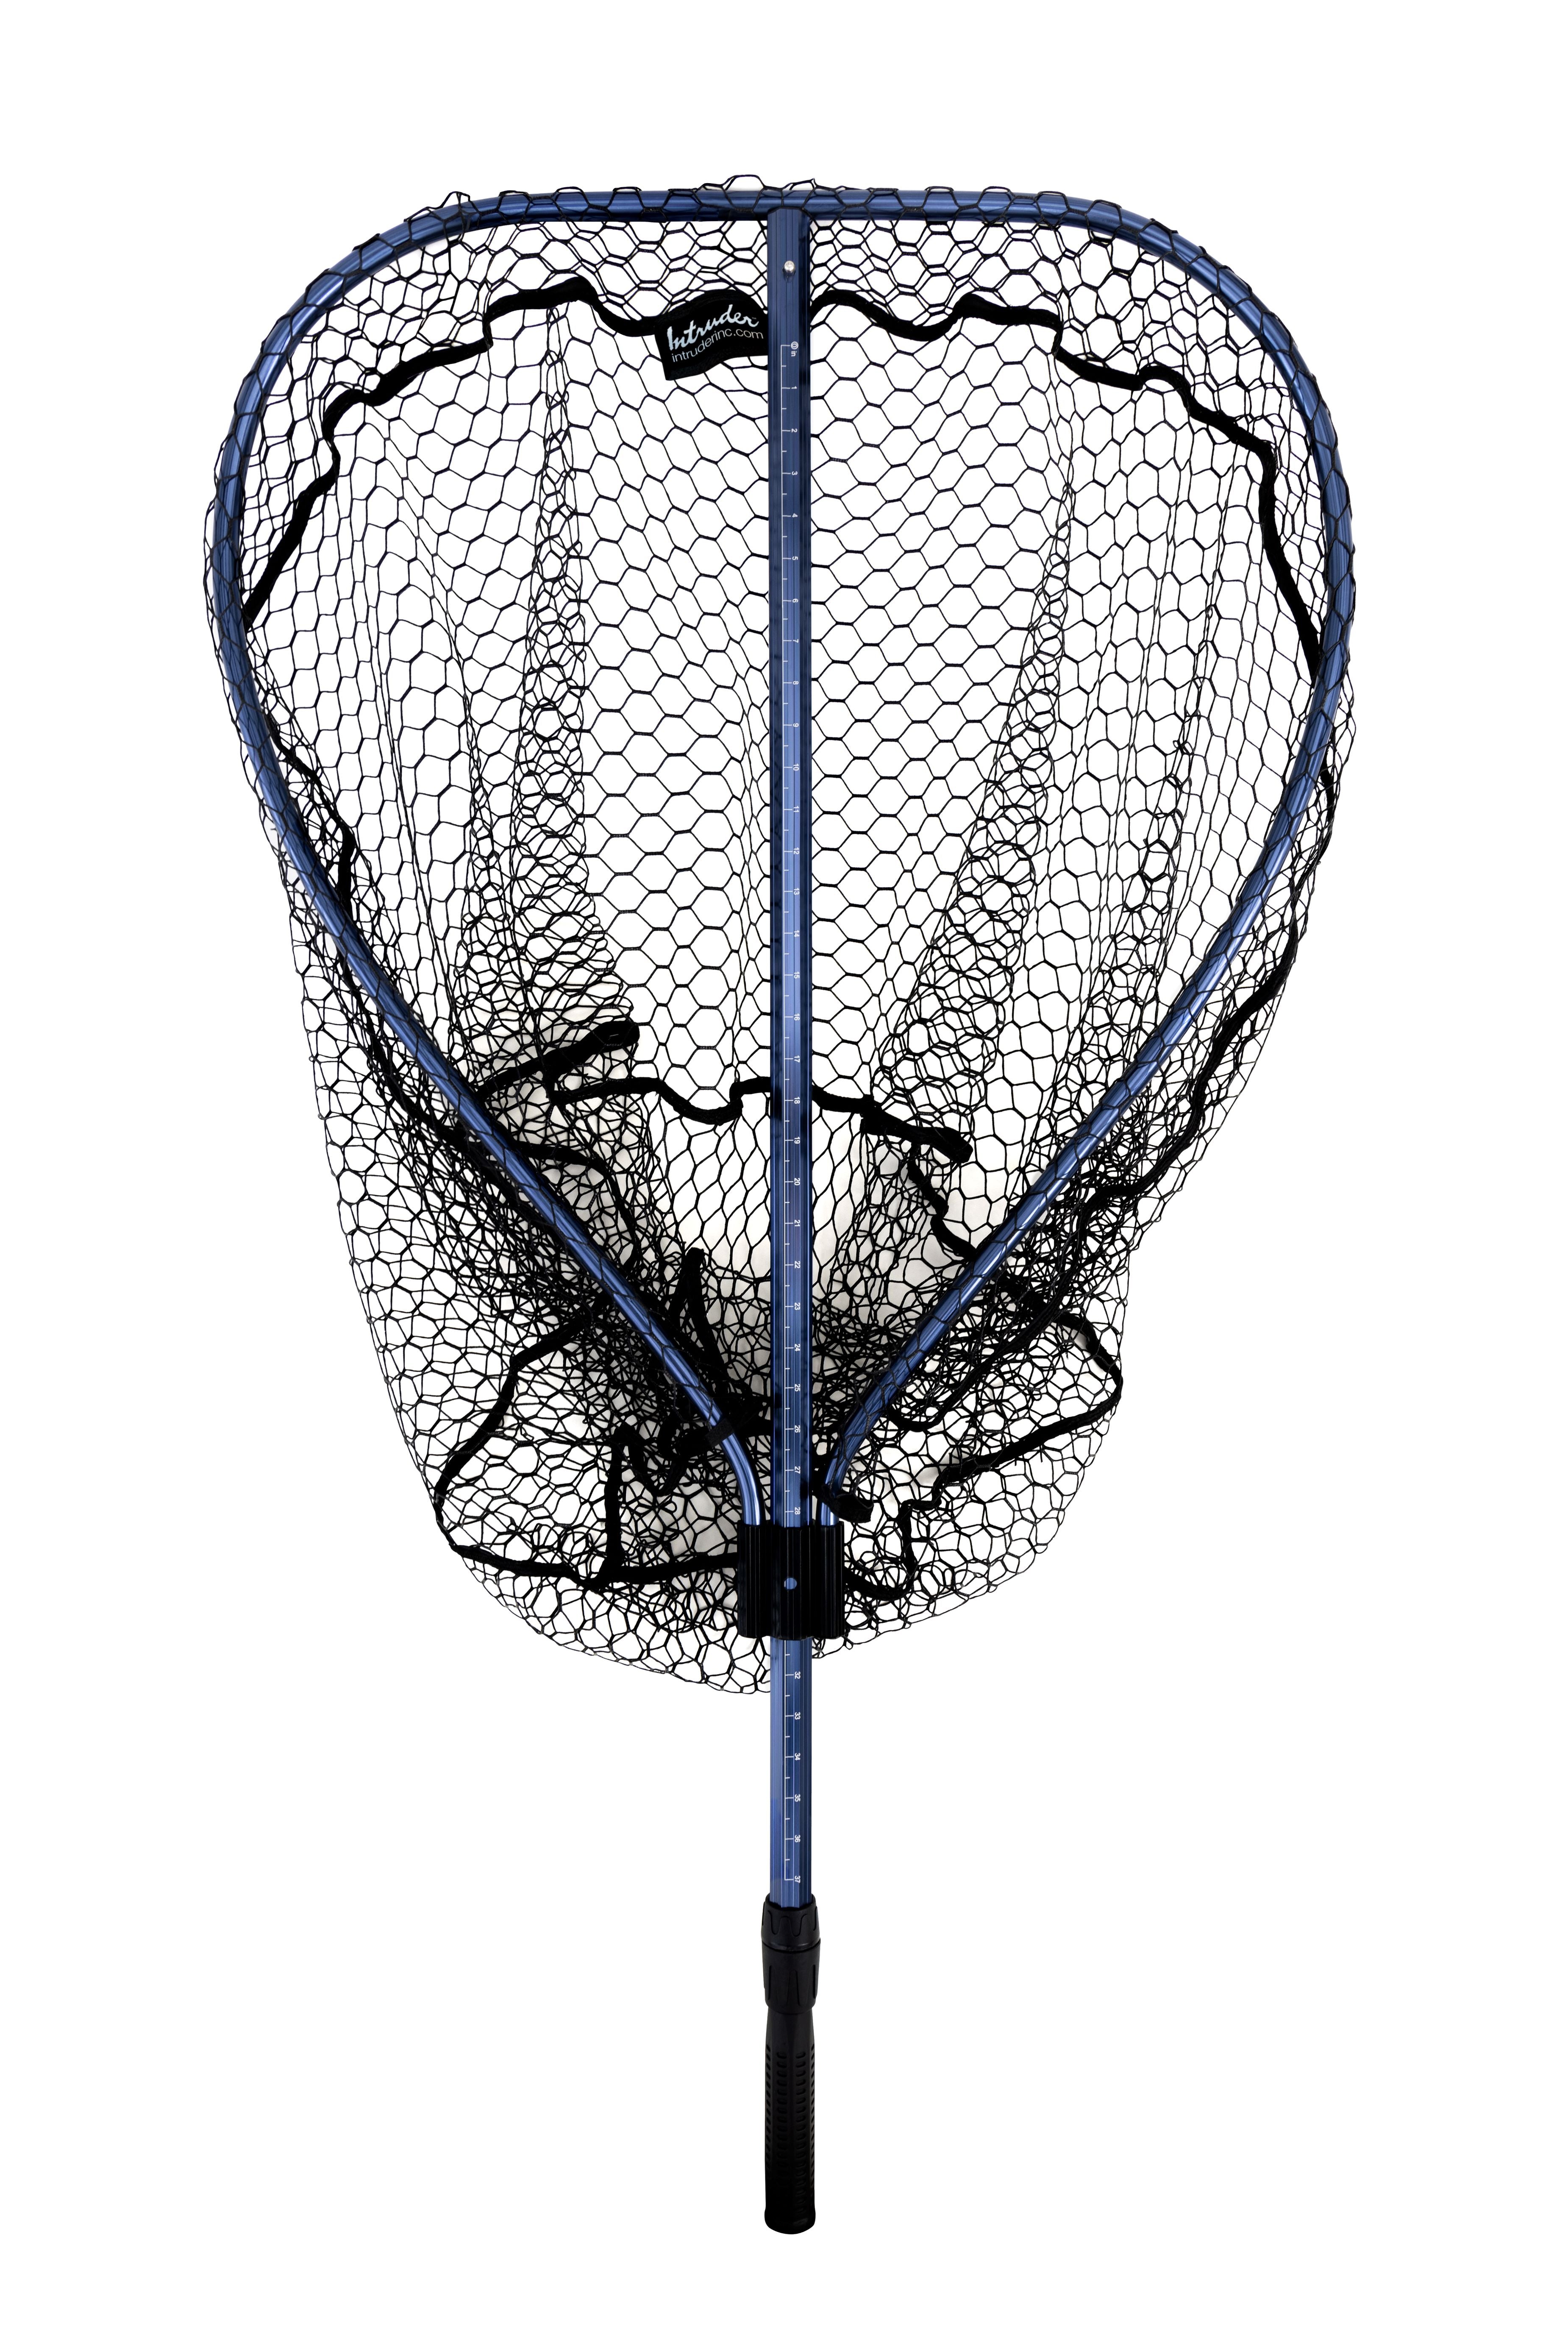 Octane Landing Net: Hoop Size 28 X 32 in